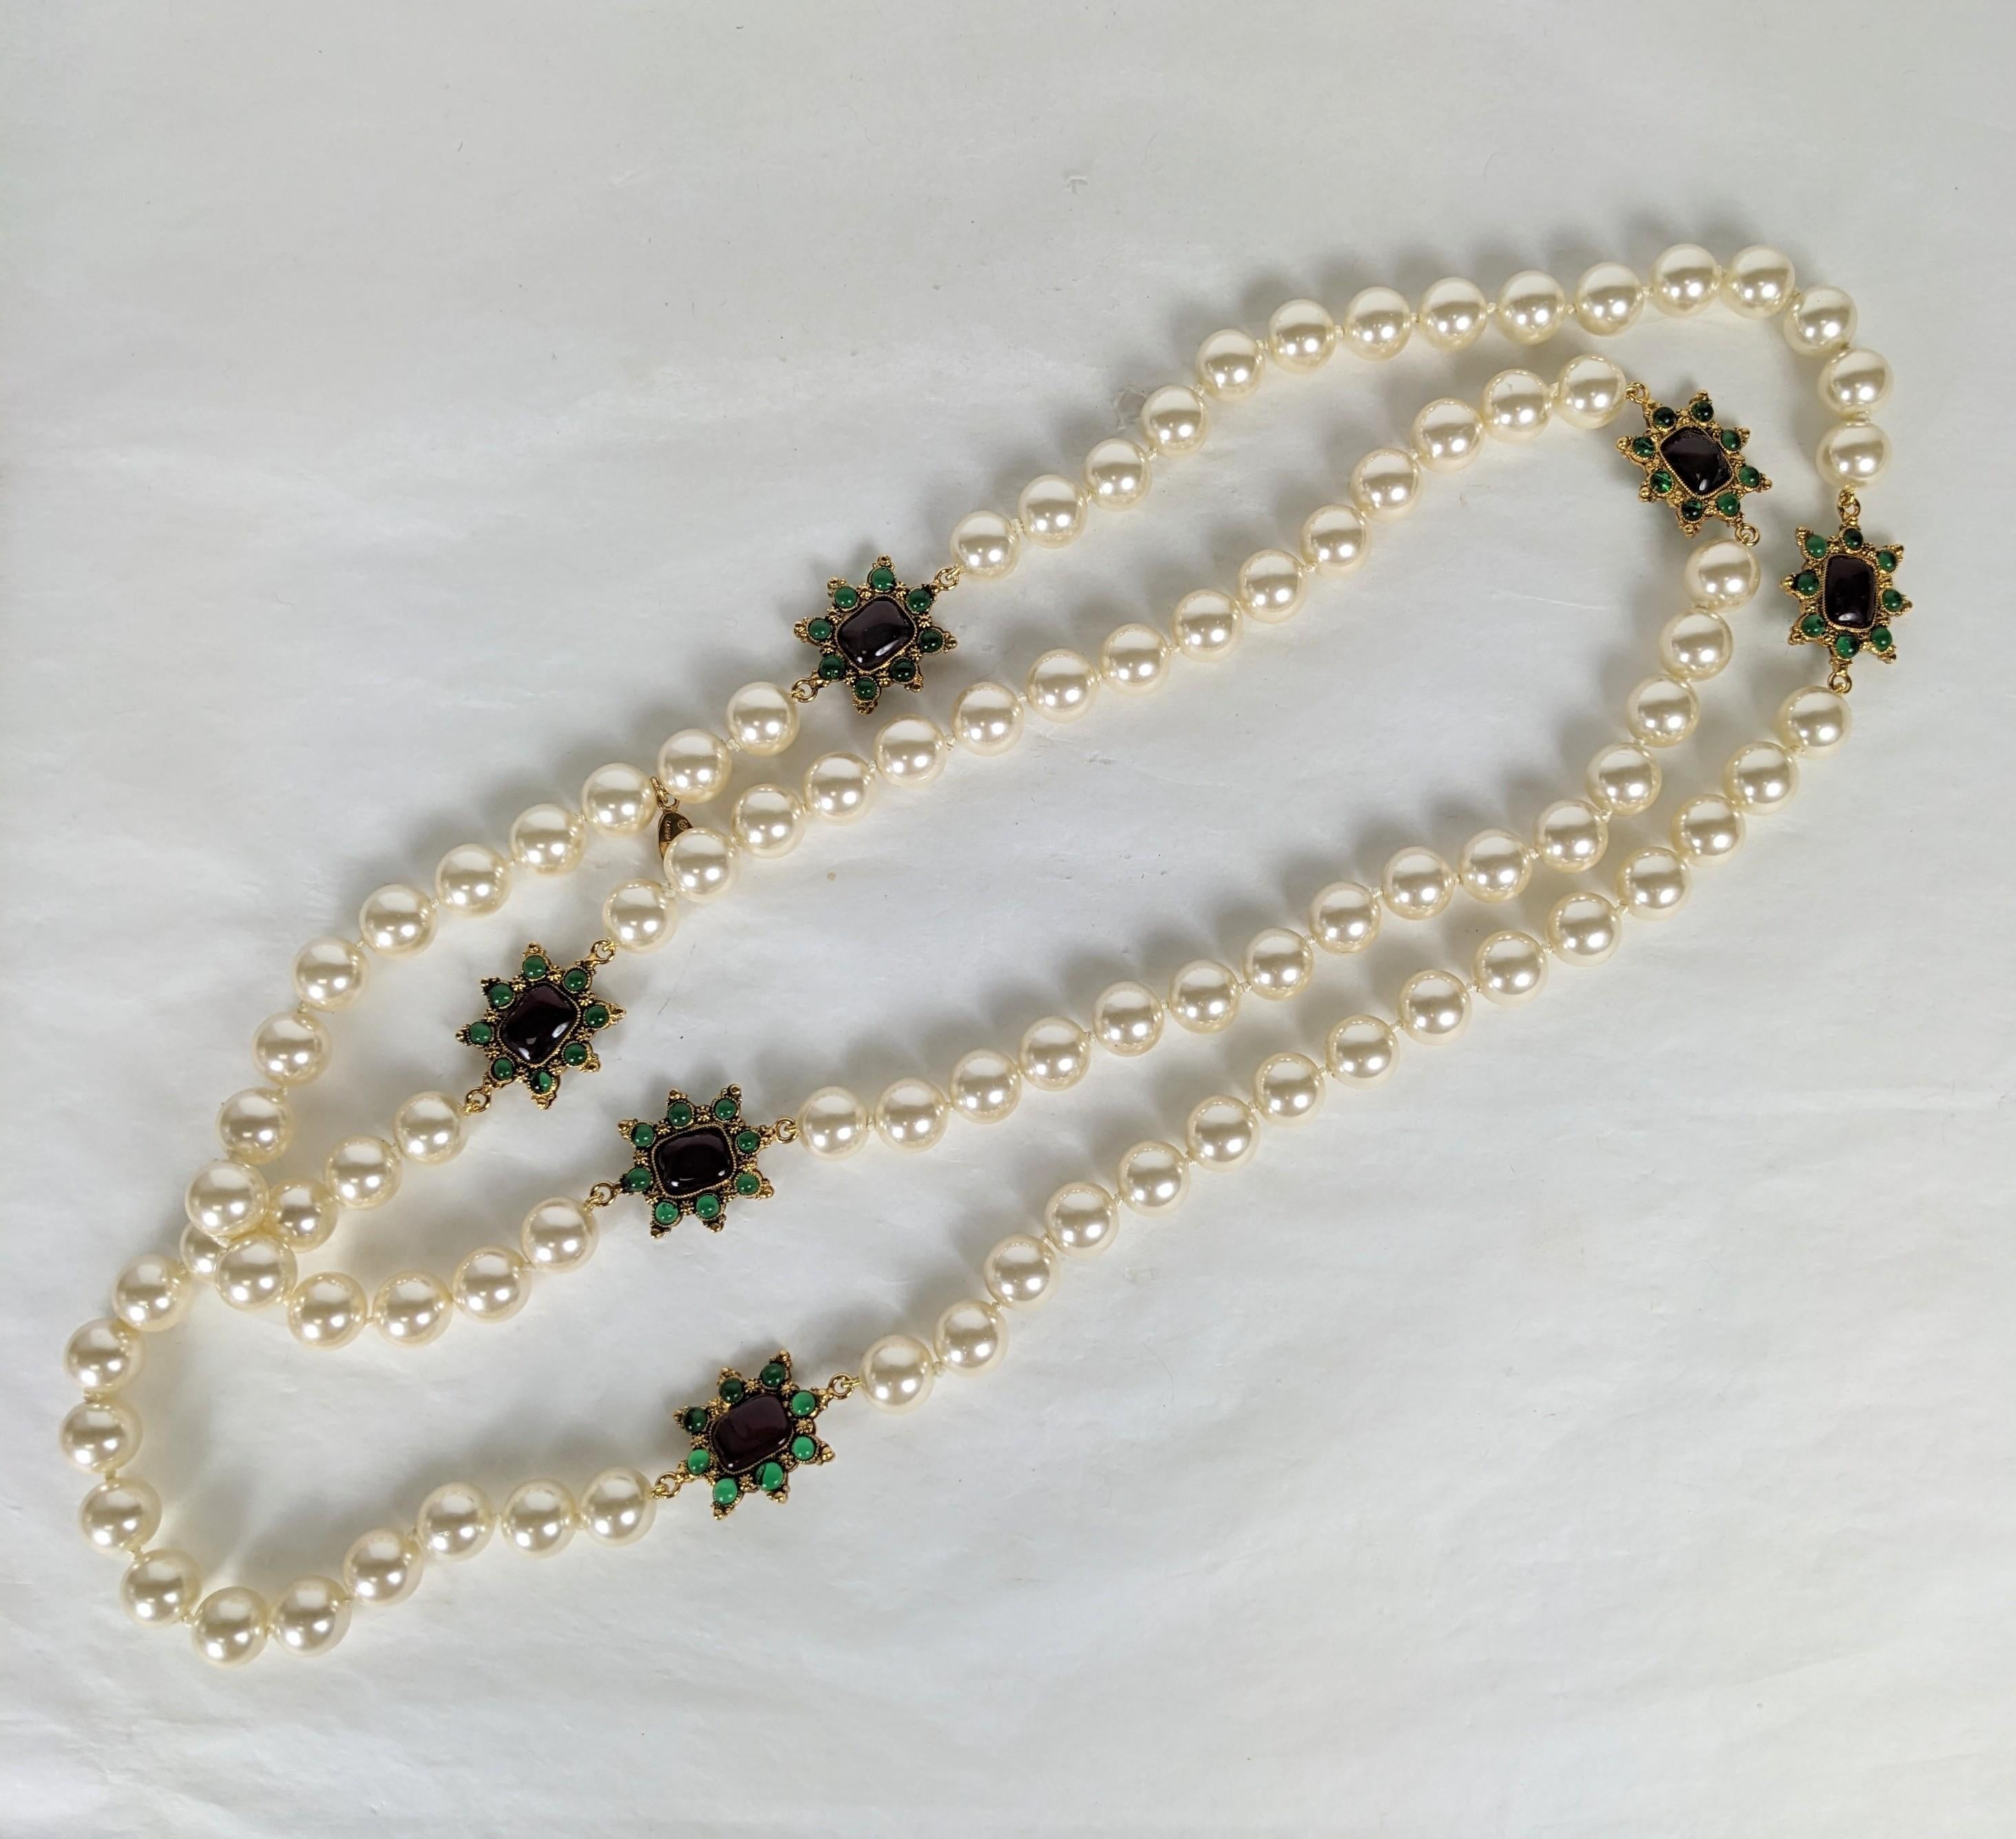 Ravissant collier Chanel en fausses perles sans fin à maillons byzantins. Composée de fausses perles en verre nouées à la main en continu avec des stations de cabochons réversibles en bronze doré, émaillées de rubis et d'émeraudes, réalisées à la